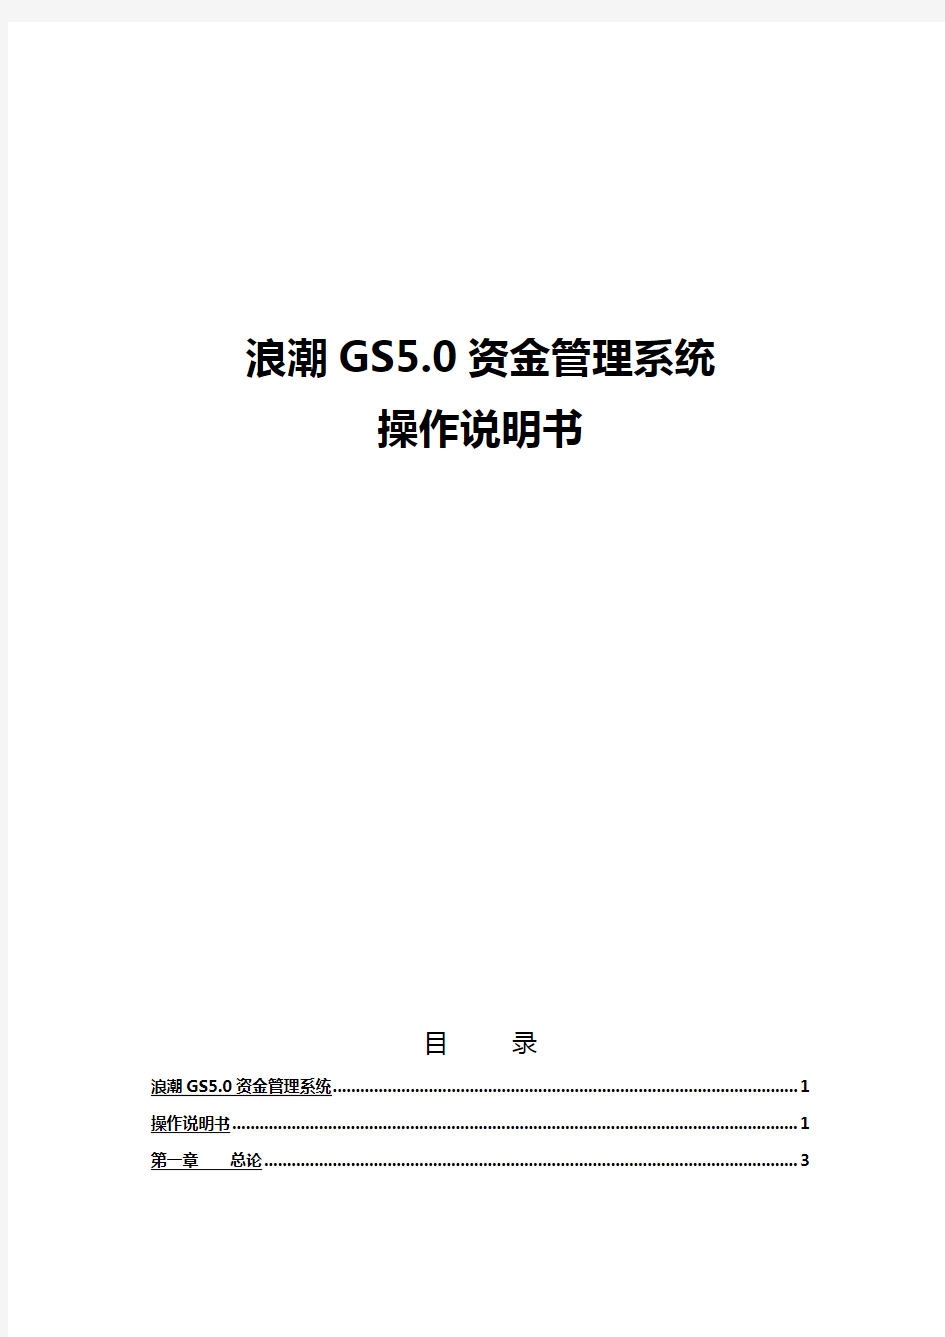 (资金管理)浪潮GS资金系统操作手册(适用于成员单位用户)M